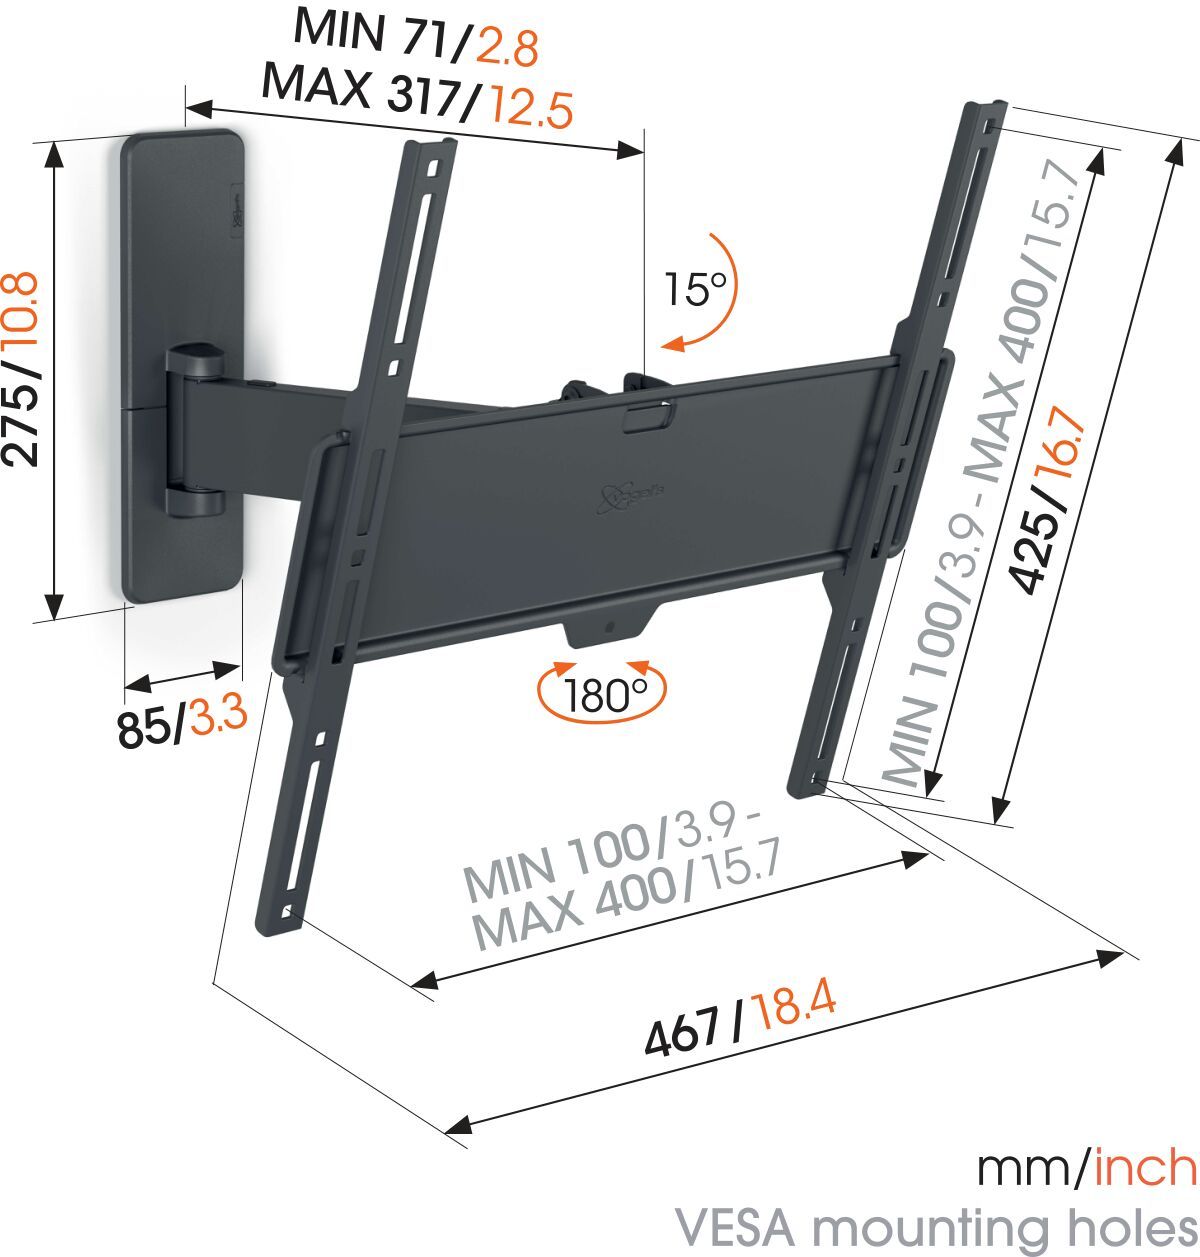 Vogel's TVM 1425 Schwenkbare TV-Wandhalterung - Geeignet für Fernseher von 32 bis 65 Zoll - Bis zu 120° schwenkbar - Bis zu 15° neigbar - Dimensions